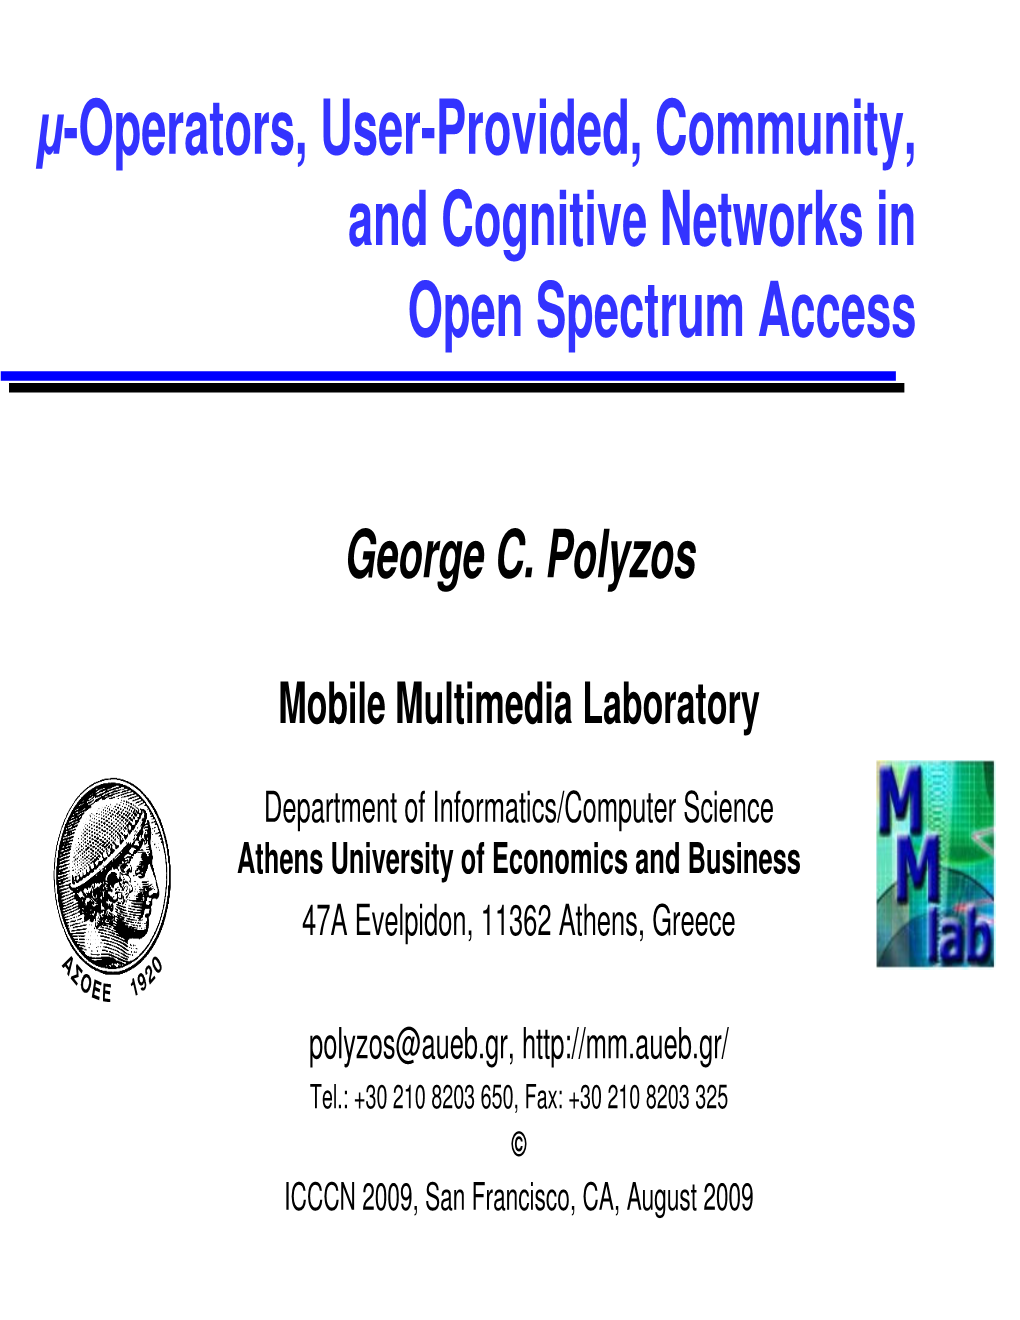 Μ-Operators, User-Provided, Community, and Cognitive Networks in Open Spectrum Access